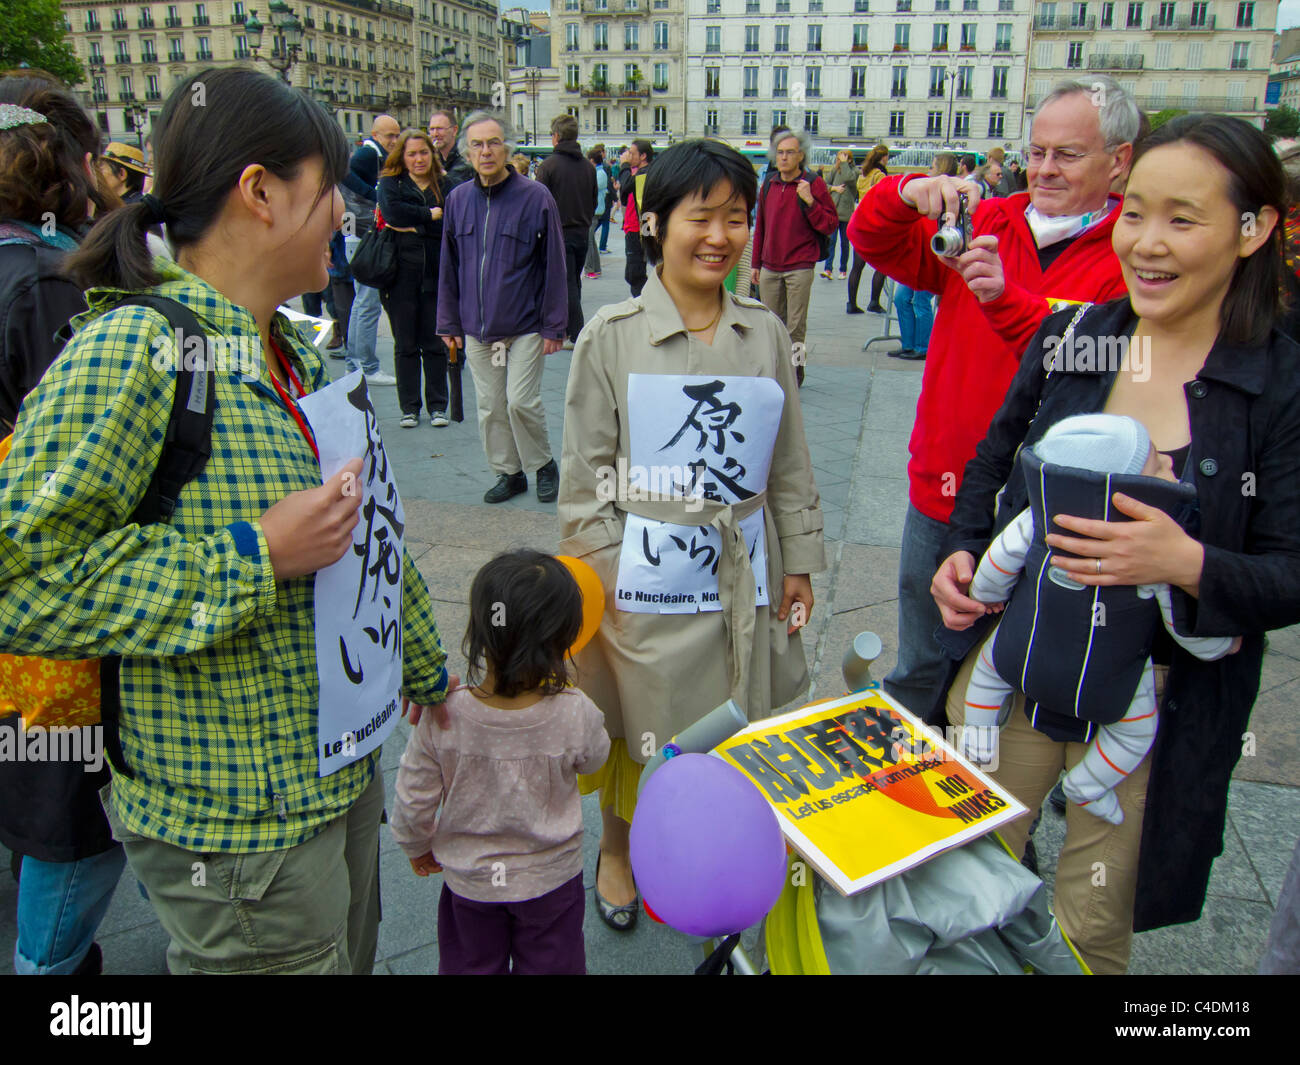 Parigi, Francia, dimostrazione francese contro il nucleare, disastro di Fukushima, donne giapponesi, famiglia migrante, volontariato, migranti in europa, protesta per l'energia nucleare, volontariato, protesta per la famiglia, protesta per gli immigrati, strada multiculturale Foto Stock